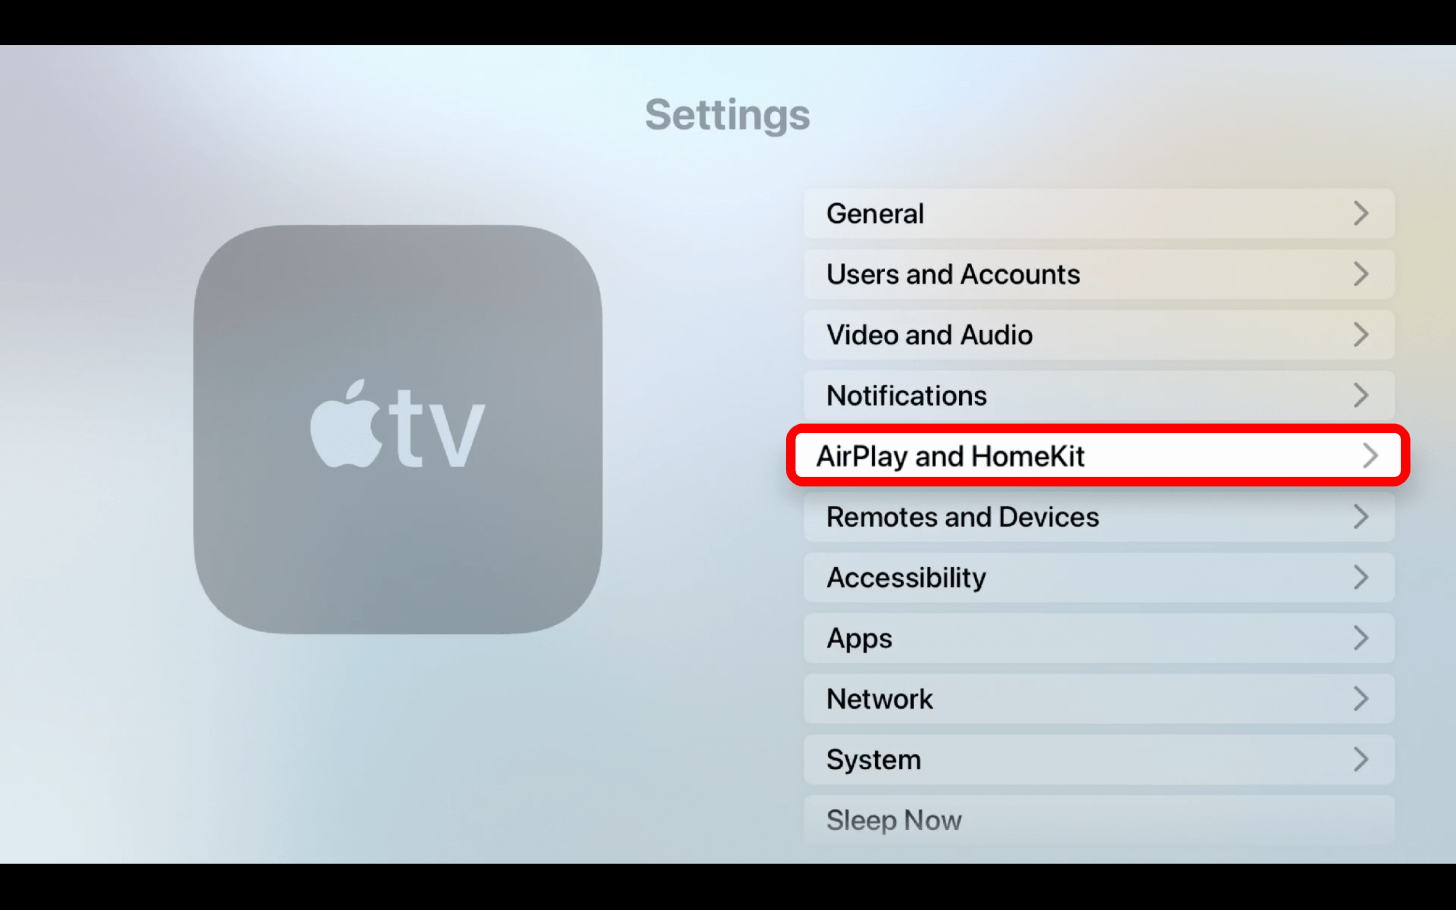 Select AirPlay and HomeKit